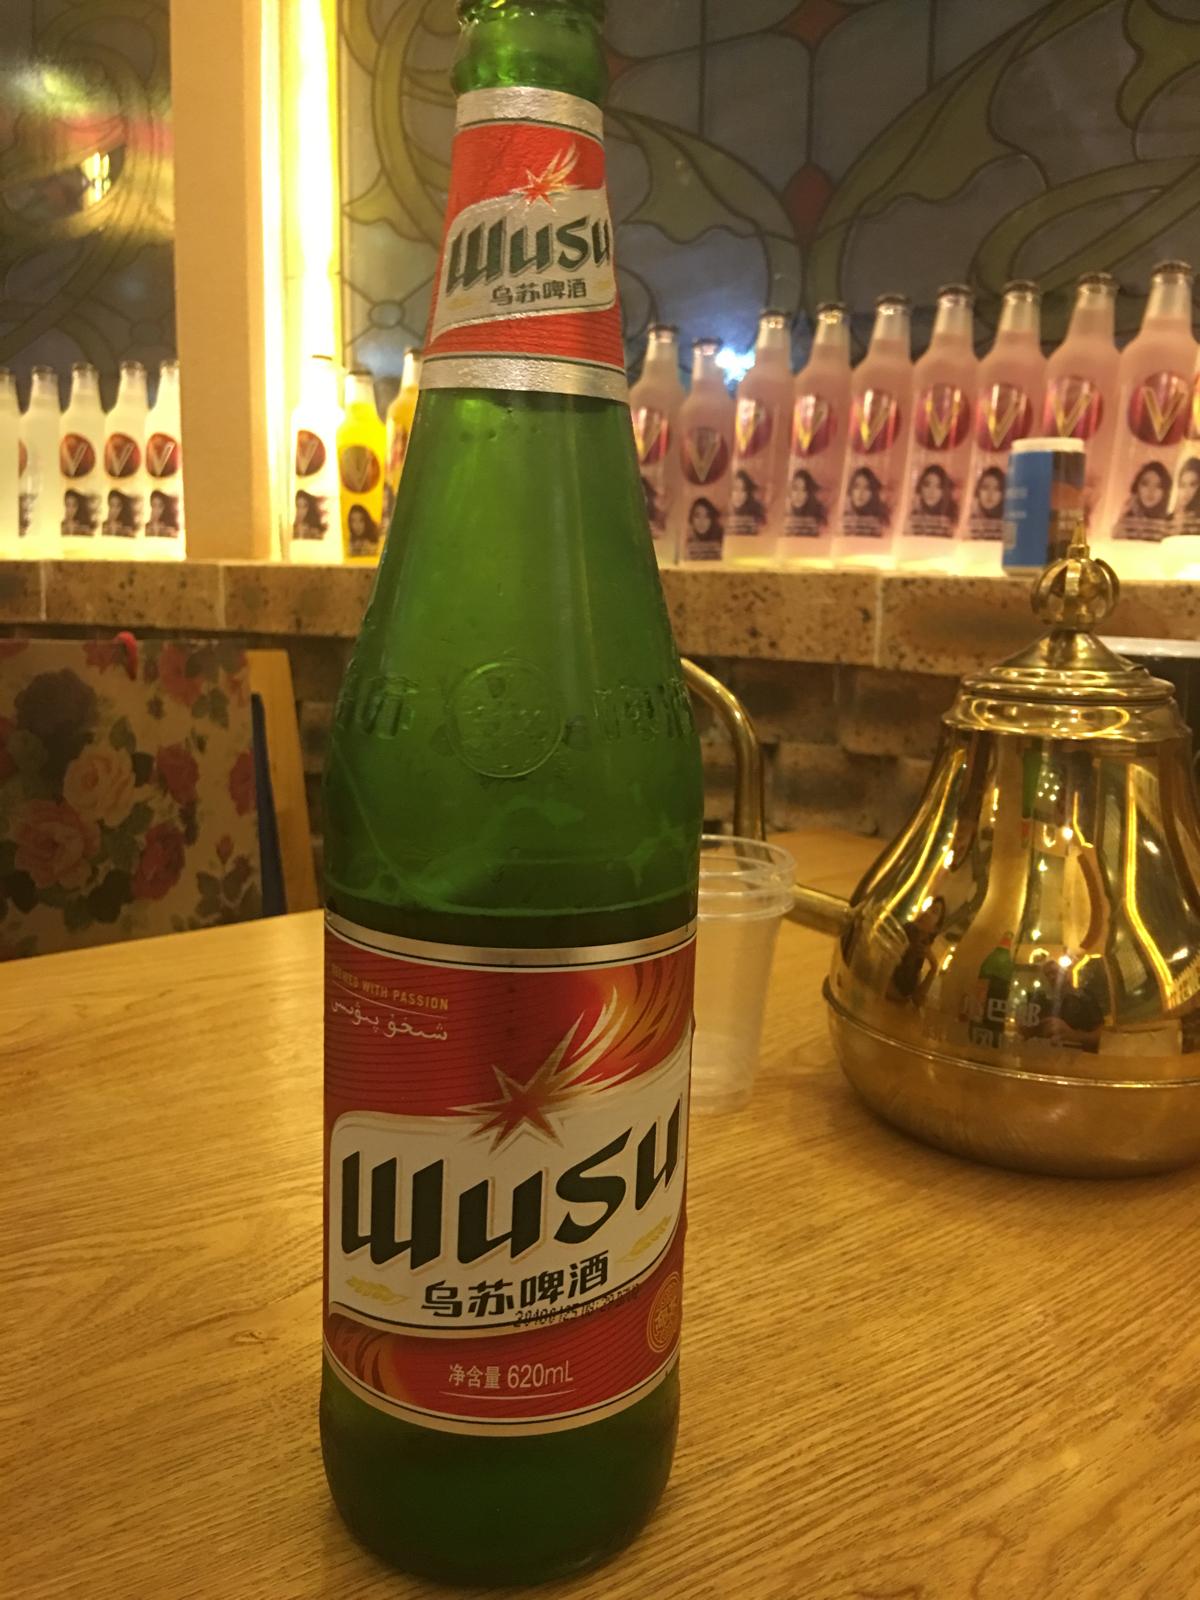 Wusu Beer